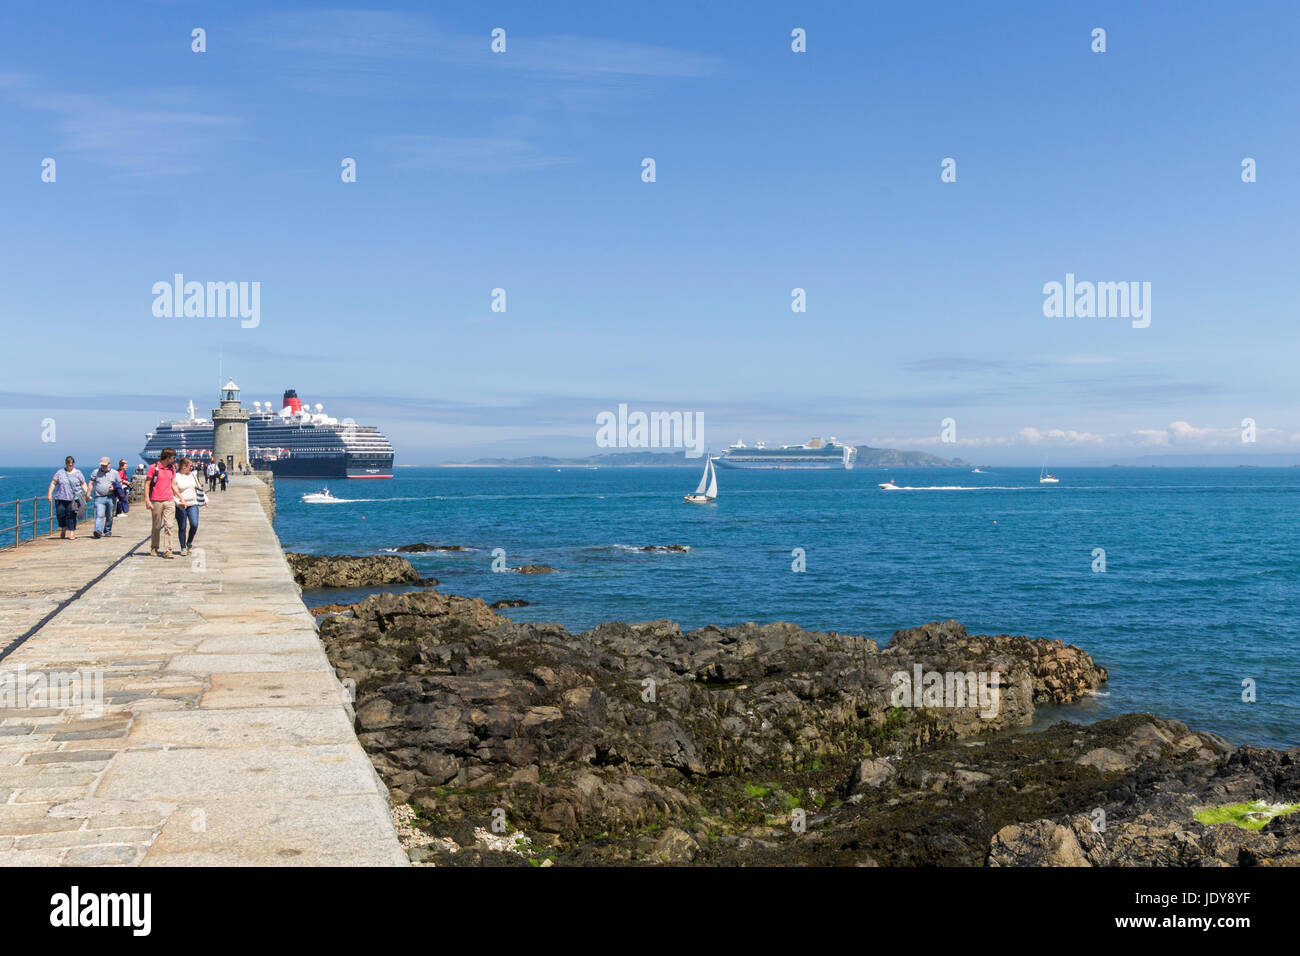 Les touristes se promener le long du brise-lames, le château de Saint Peter Port, Guernesey. Un bateau de croisière est ancrée au large. Banque D'Images